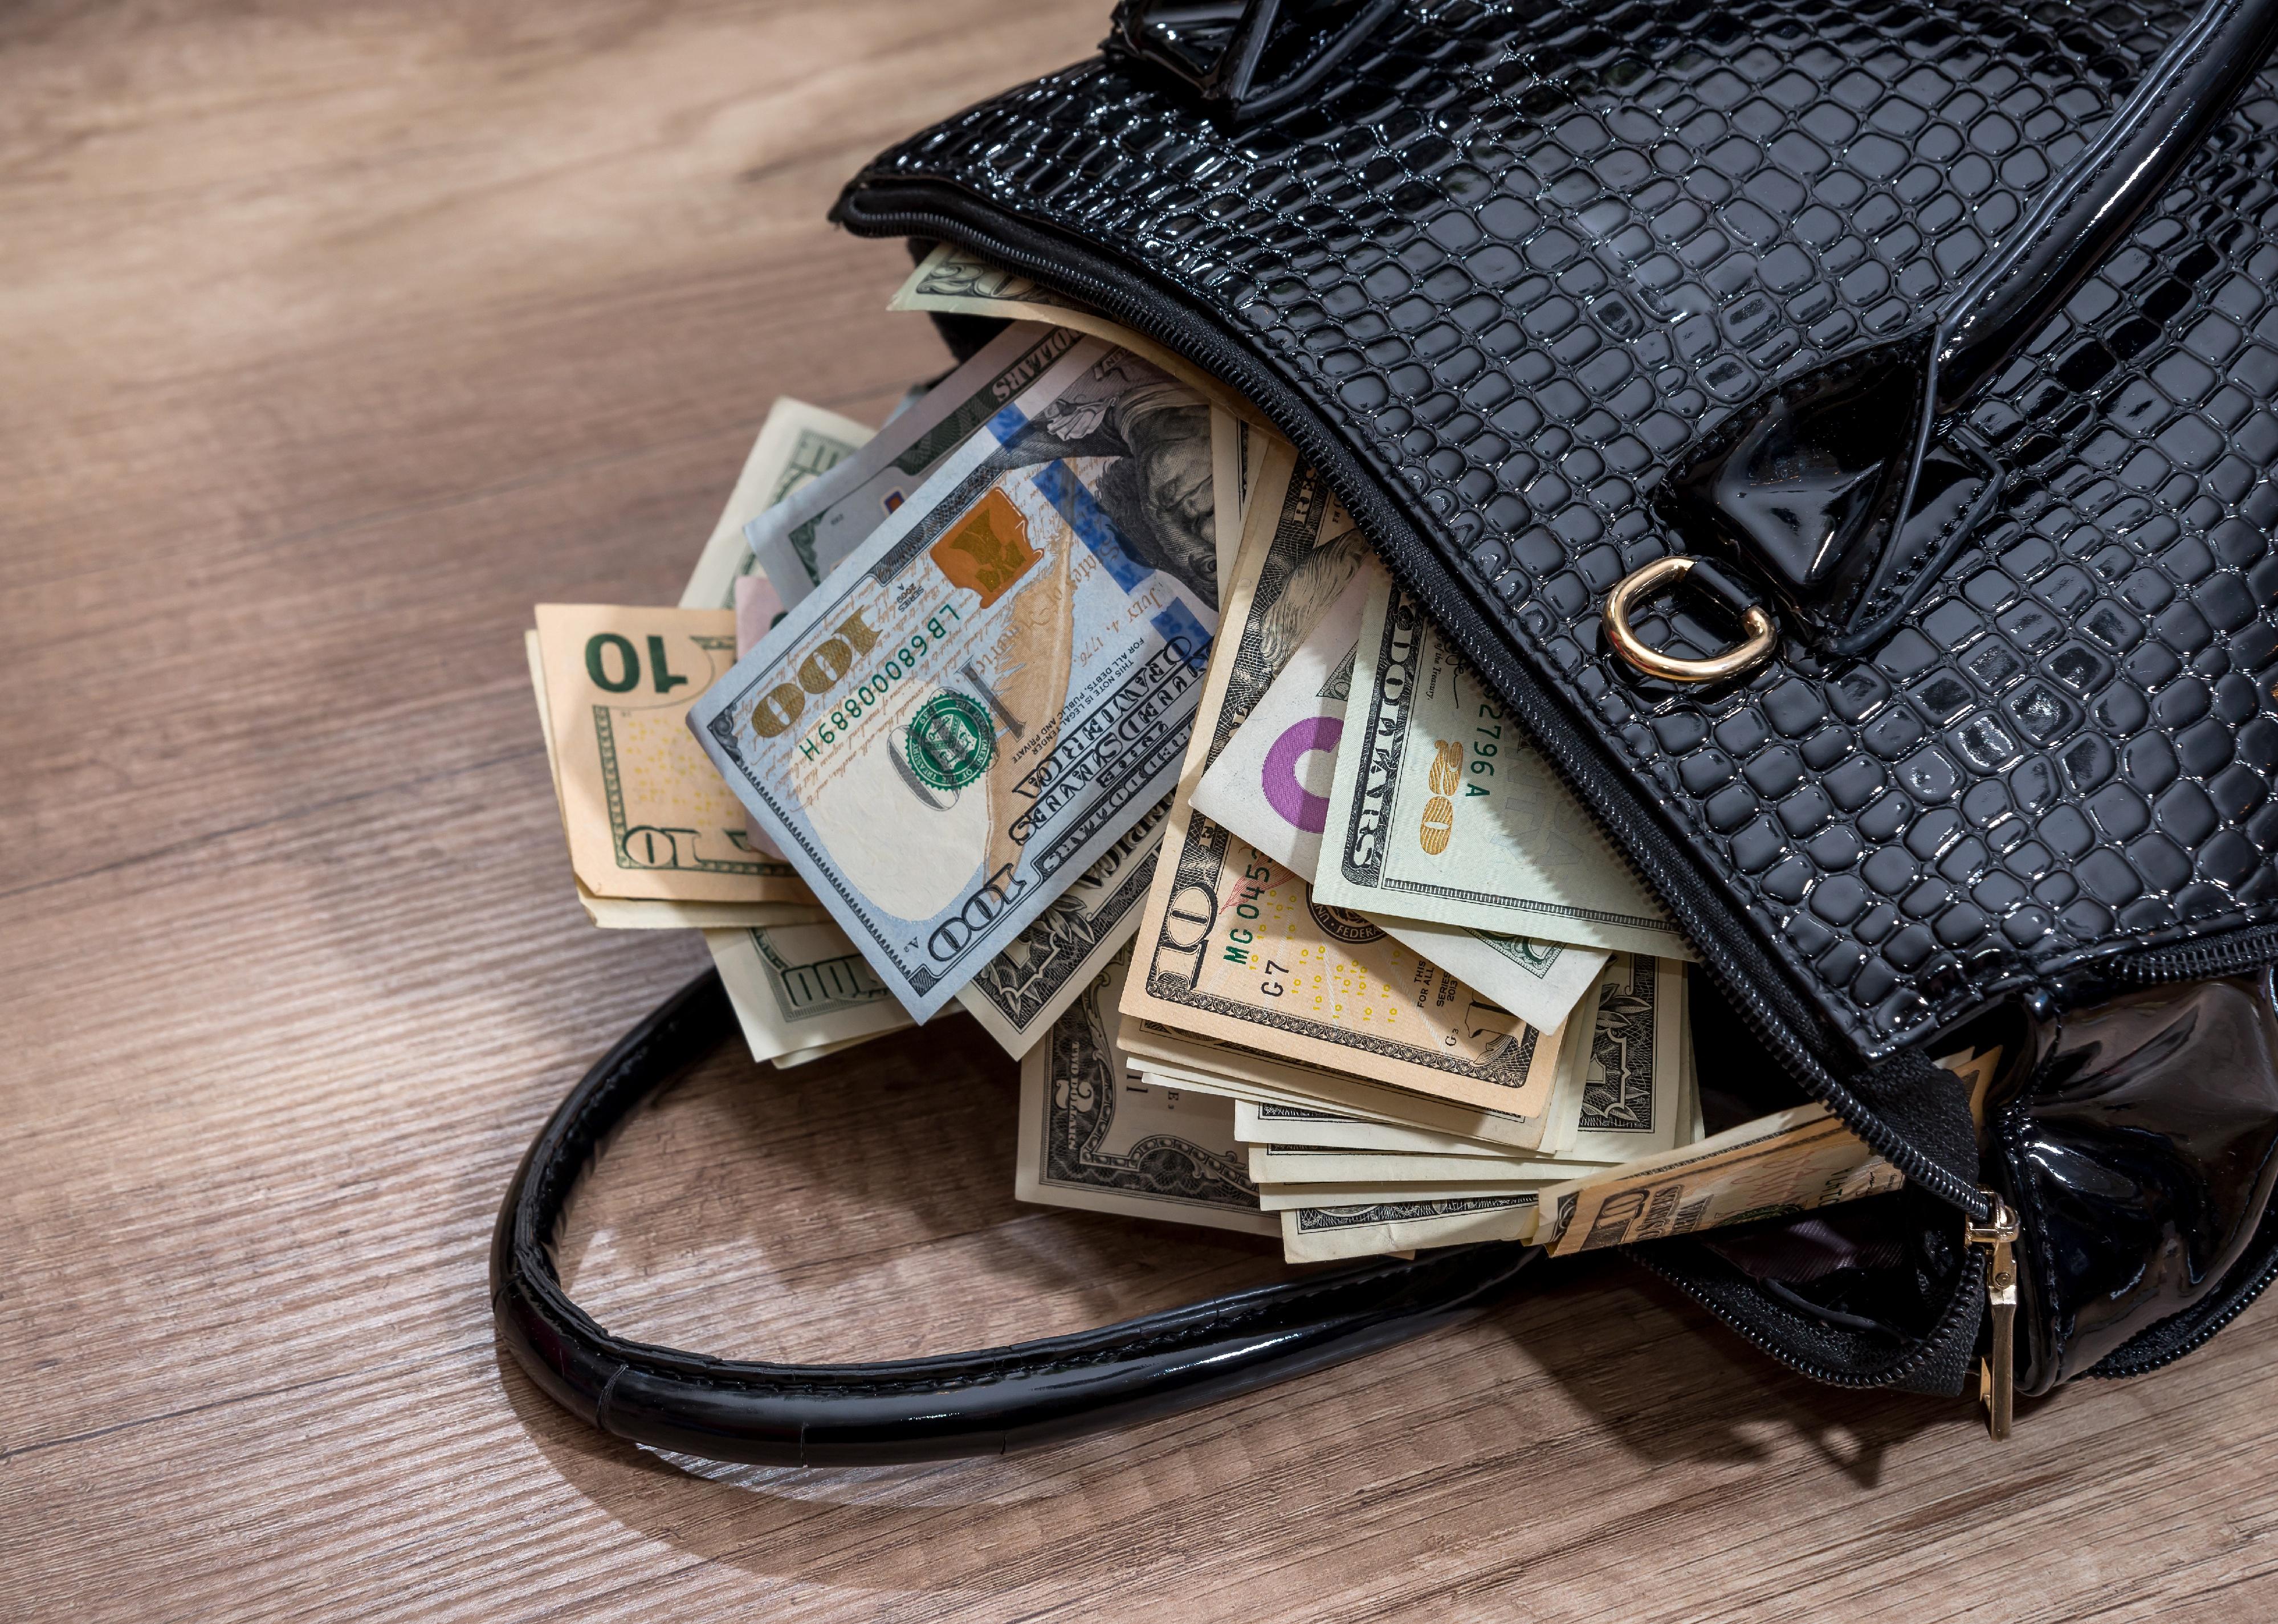 A black handbag full of money